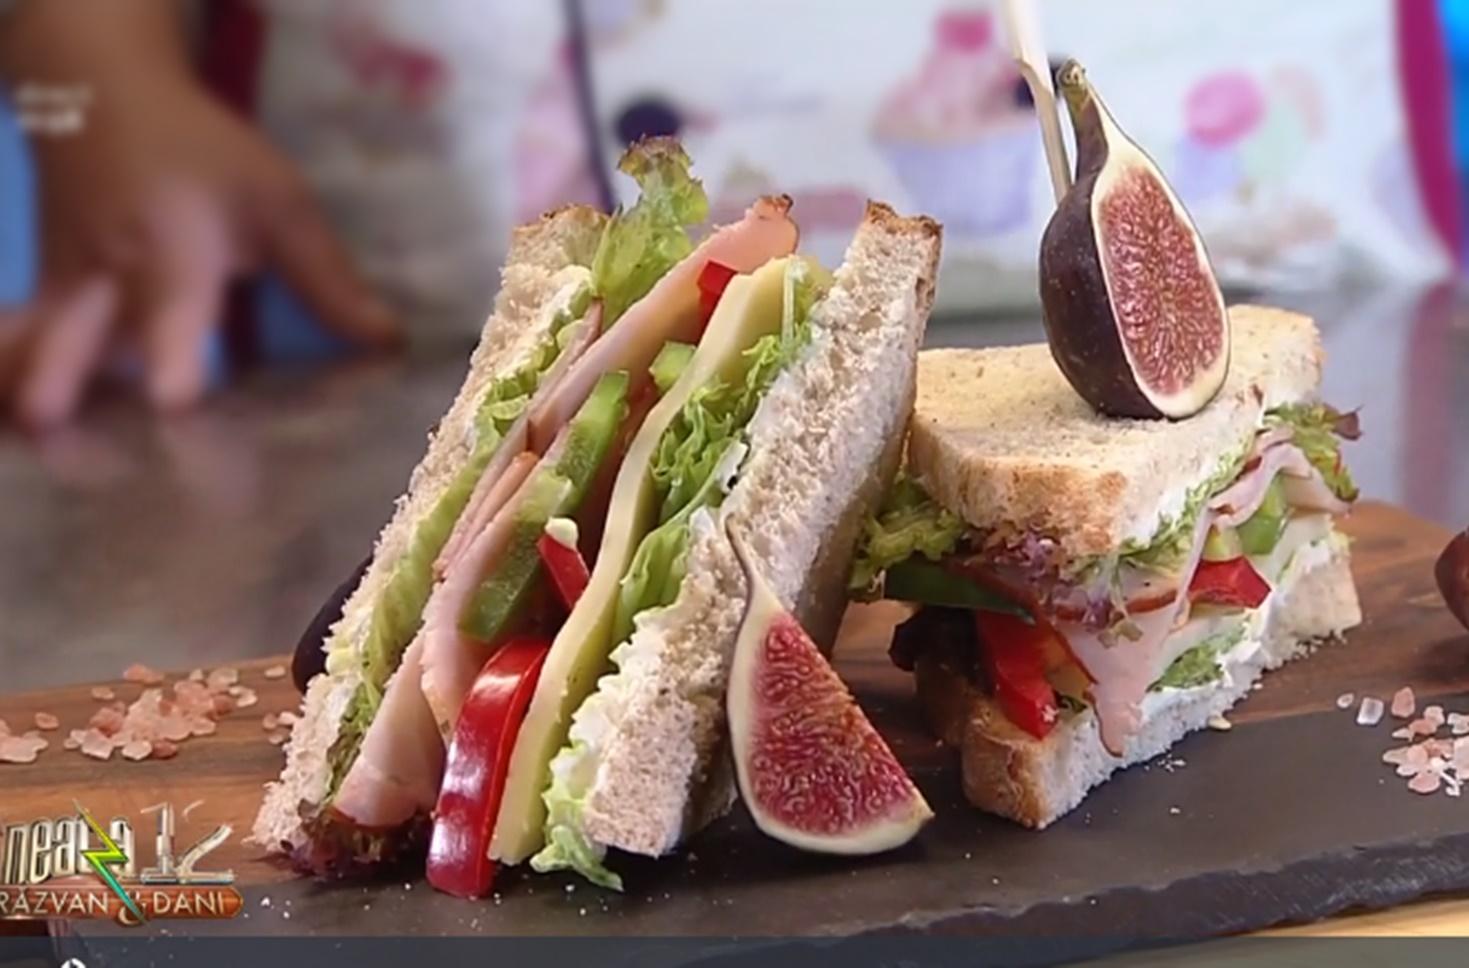 Ce putem pune în sandvișurile de la serviciu pentru a fi gustoase și sănătoase. Idei  și sfaturi de la Vlăduț